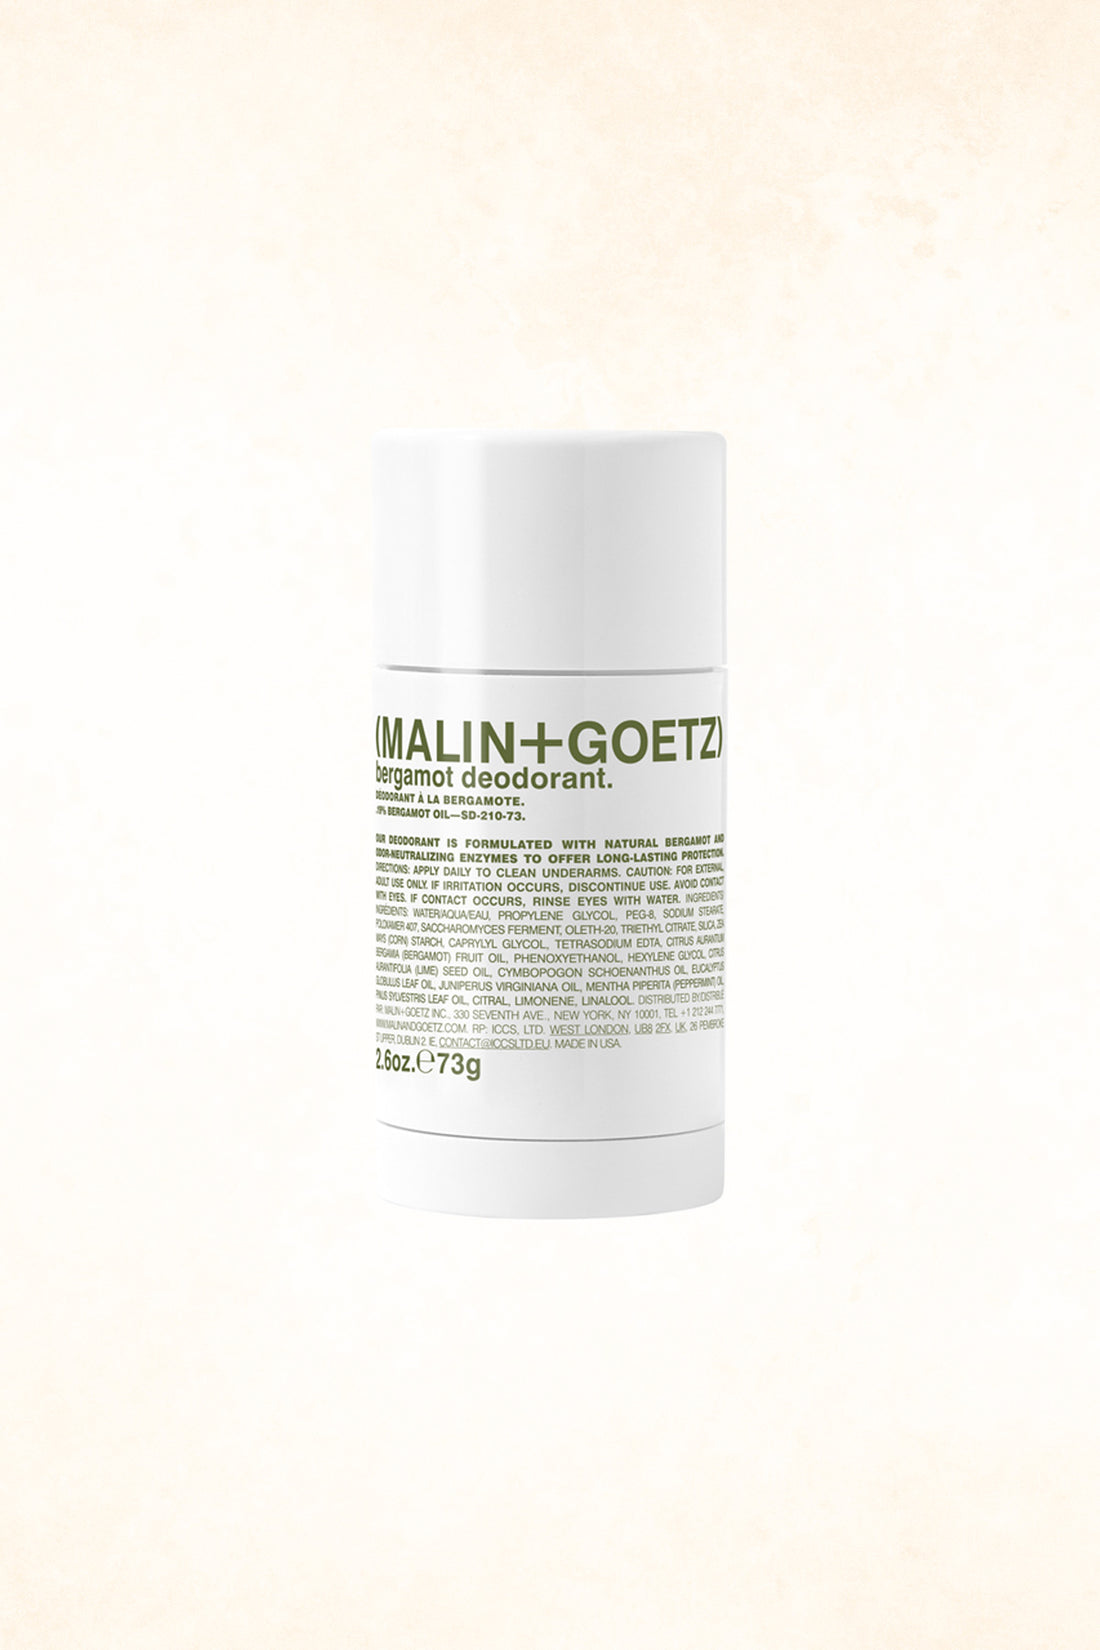 Malin+Goetz – Bergamot Deodorant 2.6 oz / 73 g